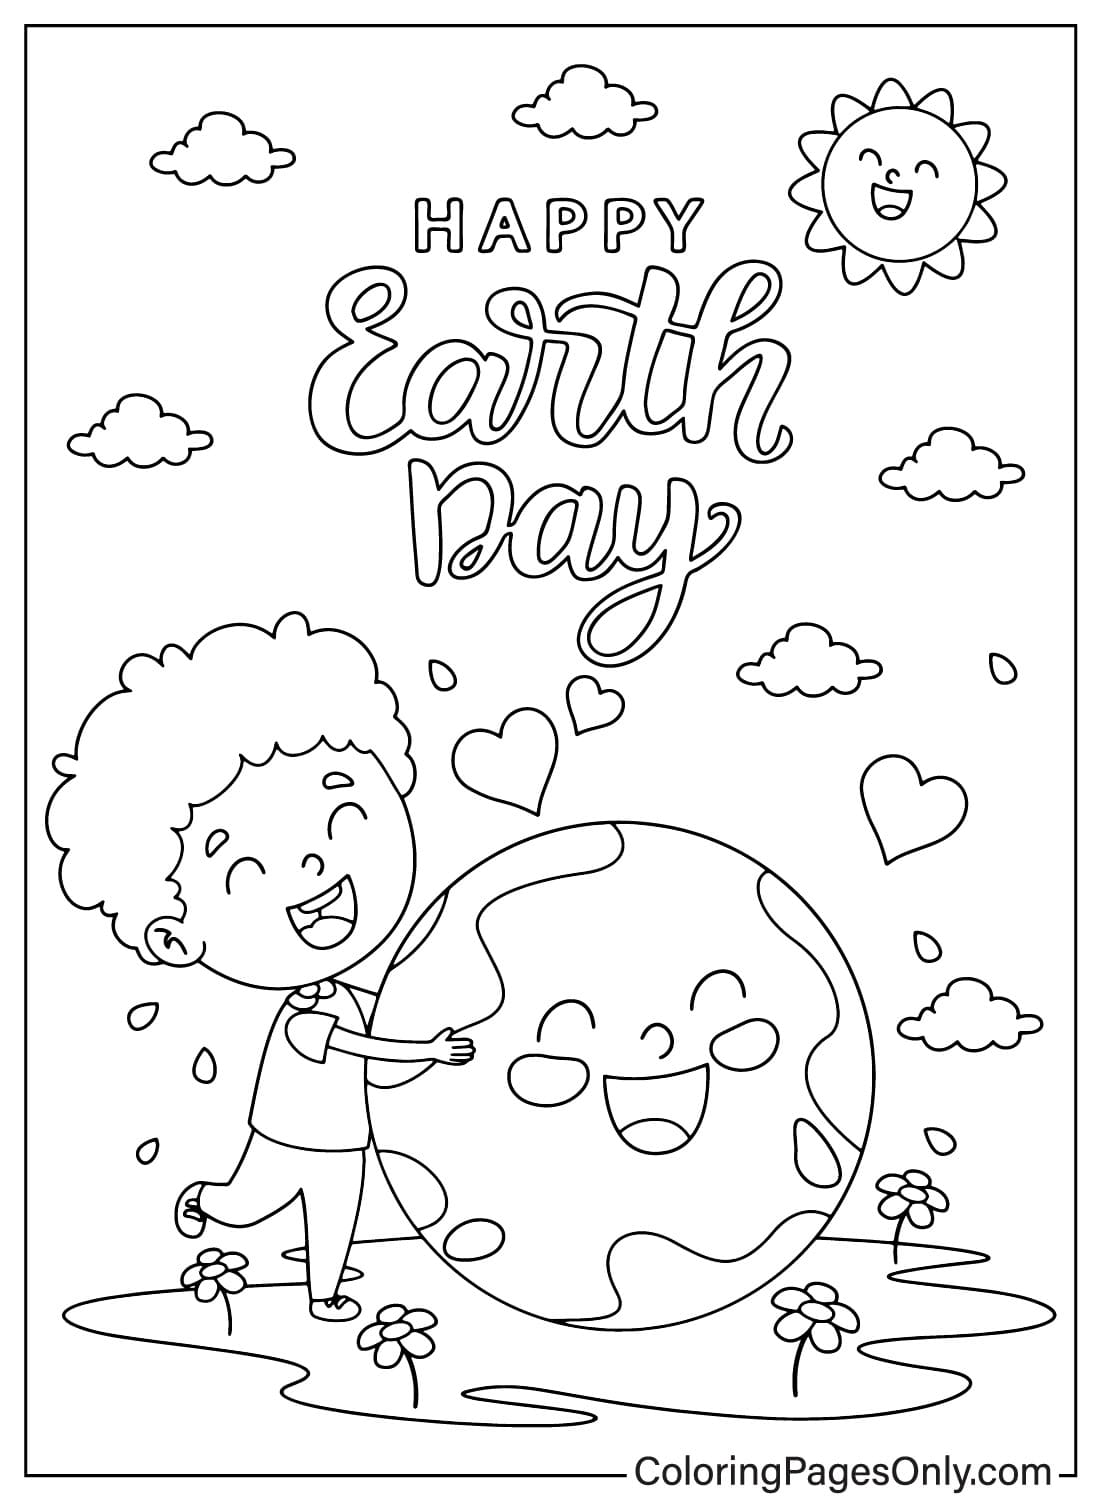 Página para colorear del Día de la Tierra de abril del Día de la Tierra